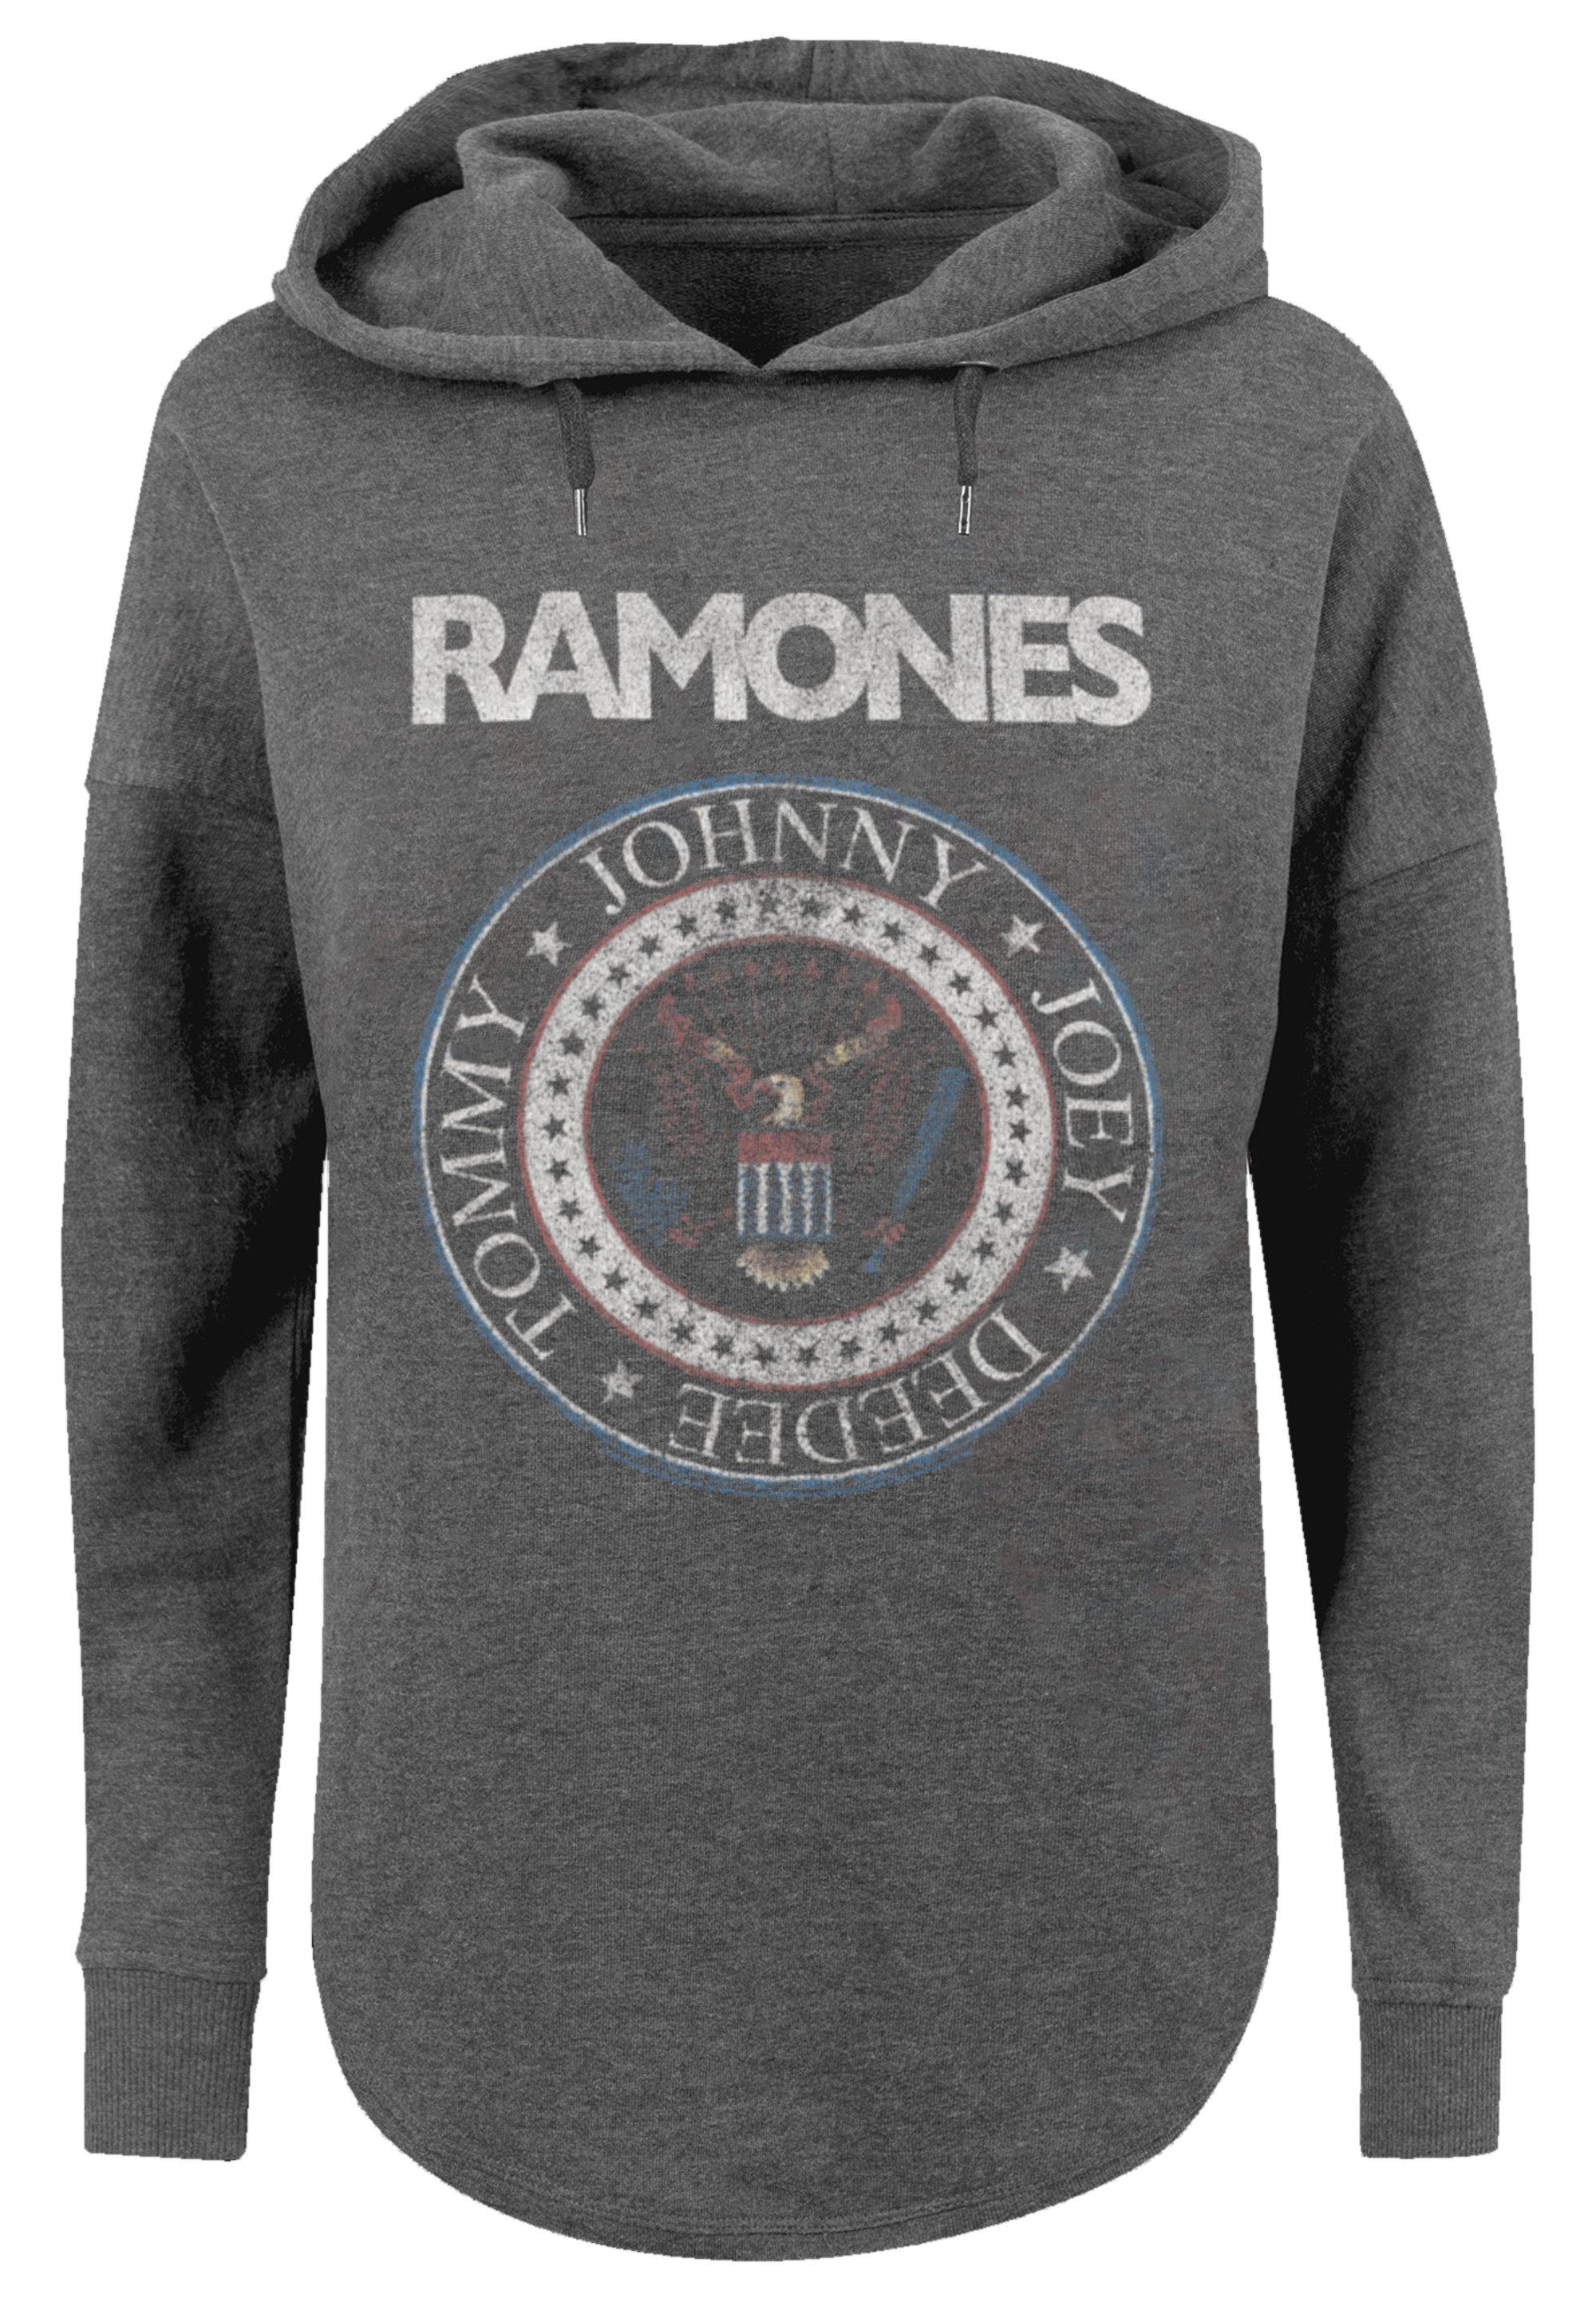 F4NT4STIC Sweatshirt Ramones Rock Musik Band Red White And Seal Premium  Qualität, Band, Rock-Musik, Gemütlicher Dammen Hoody mit sportlichem Look